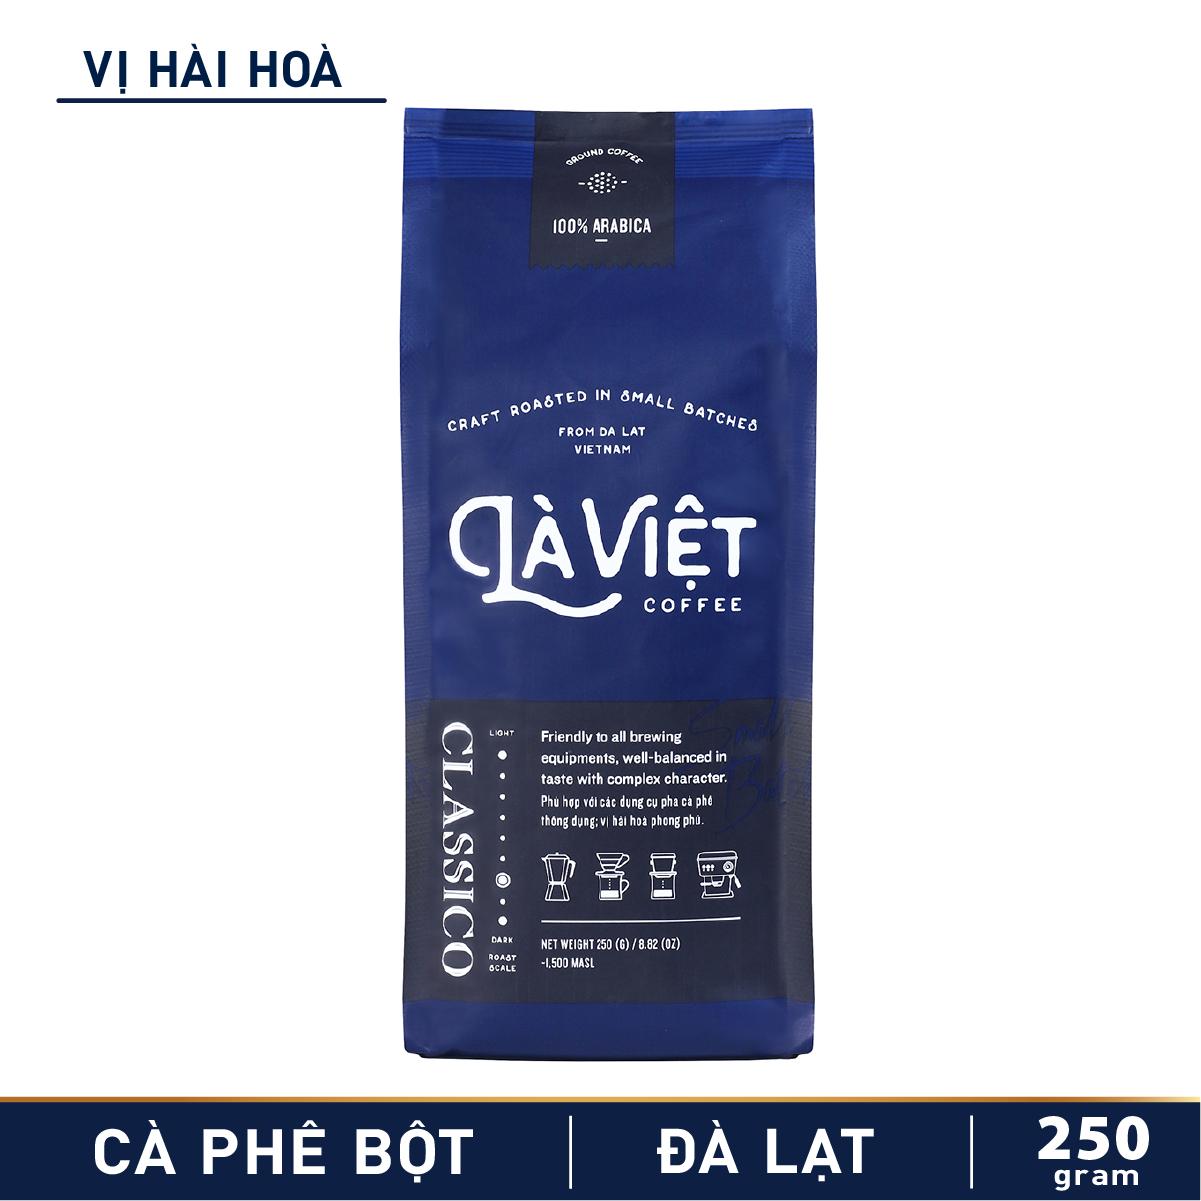 Cà Phê Bột Là Việt Classico 100% Arabica 250g Vị Hài Hòa